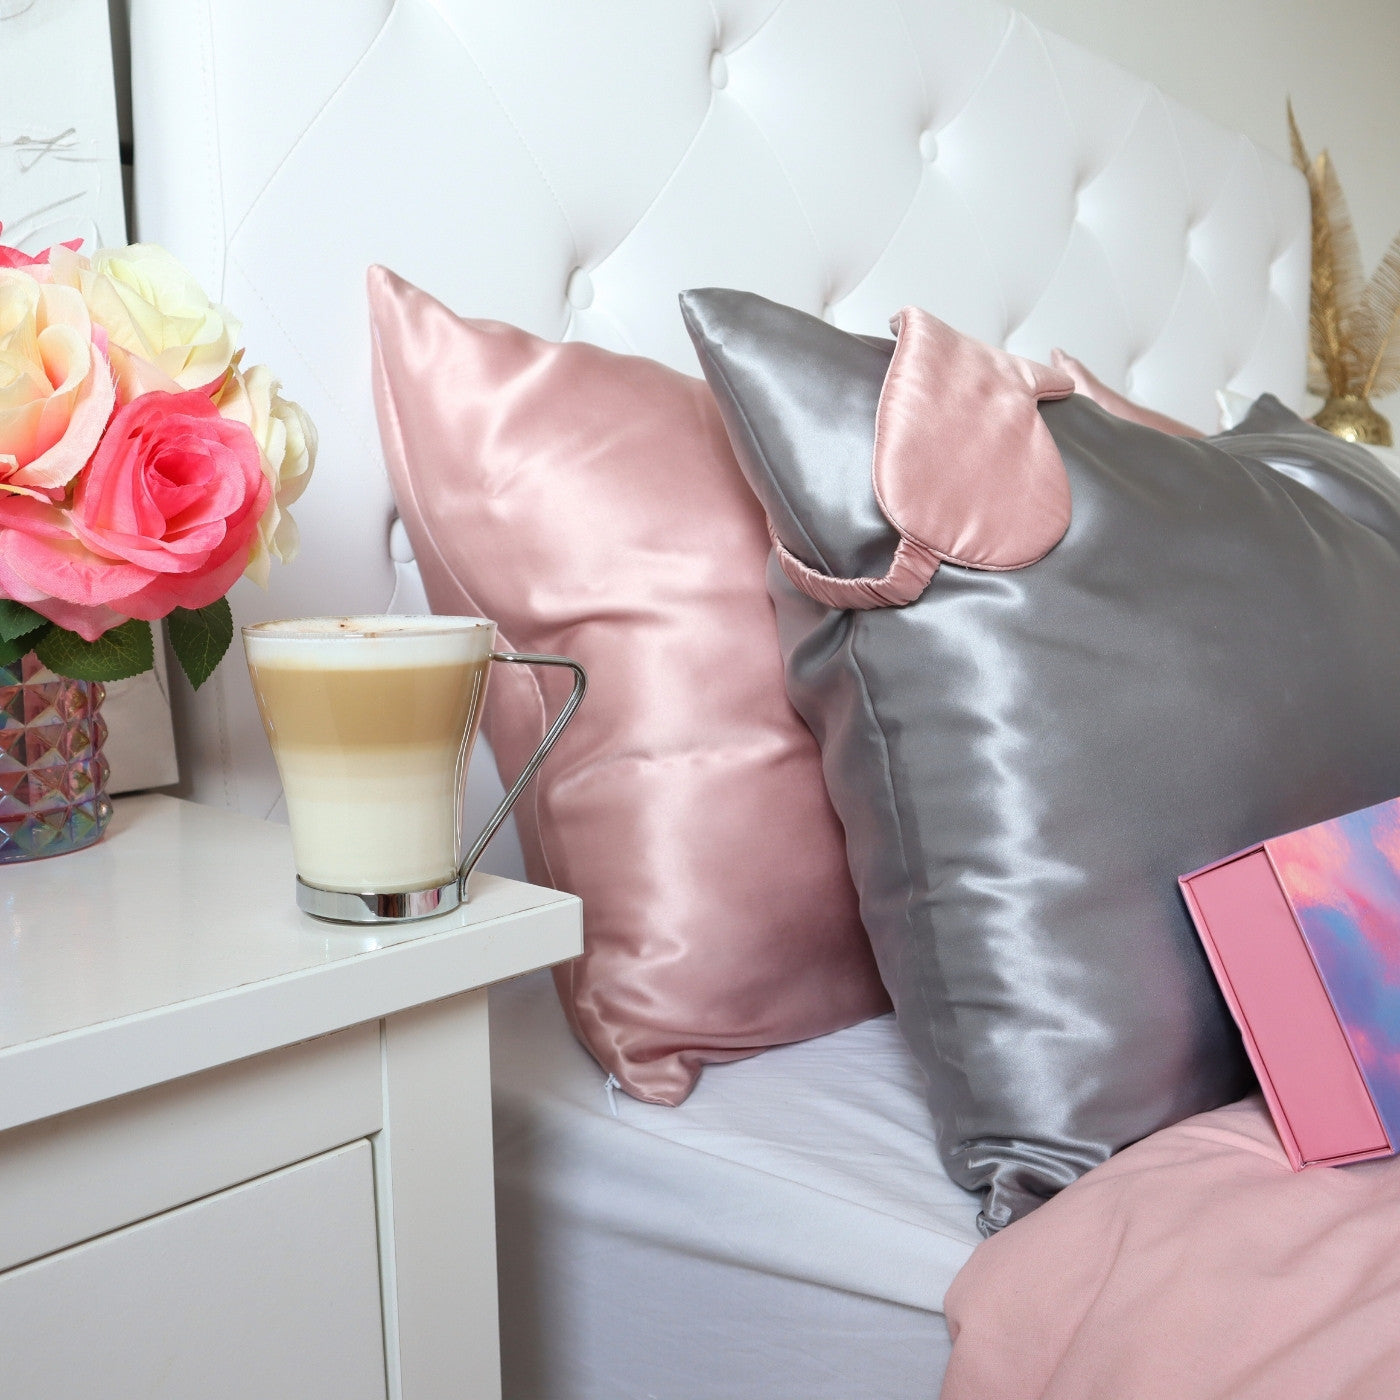 Silk Pillowcase Pink